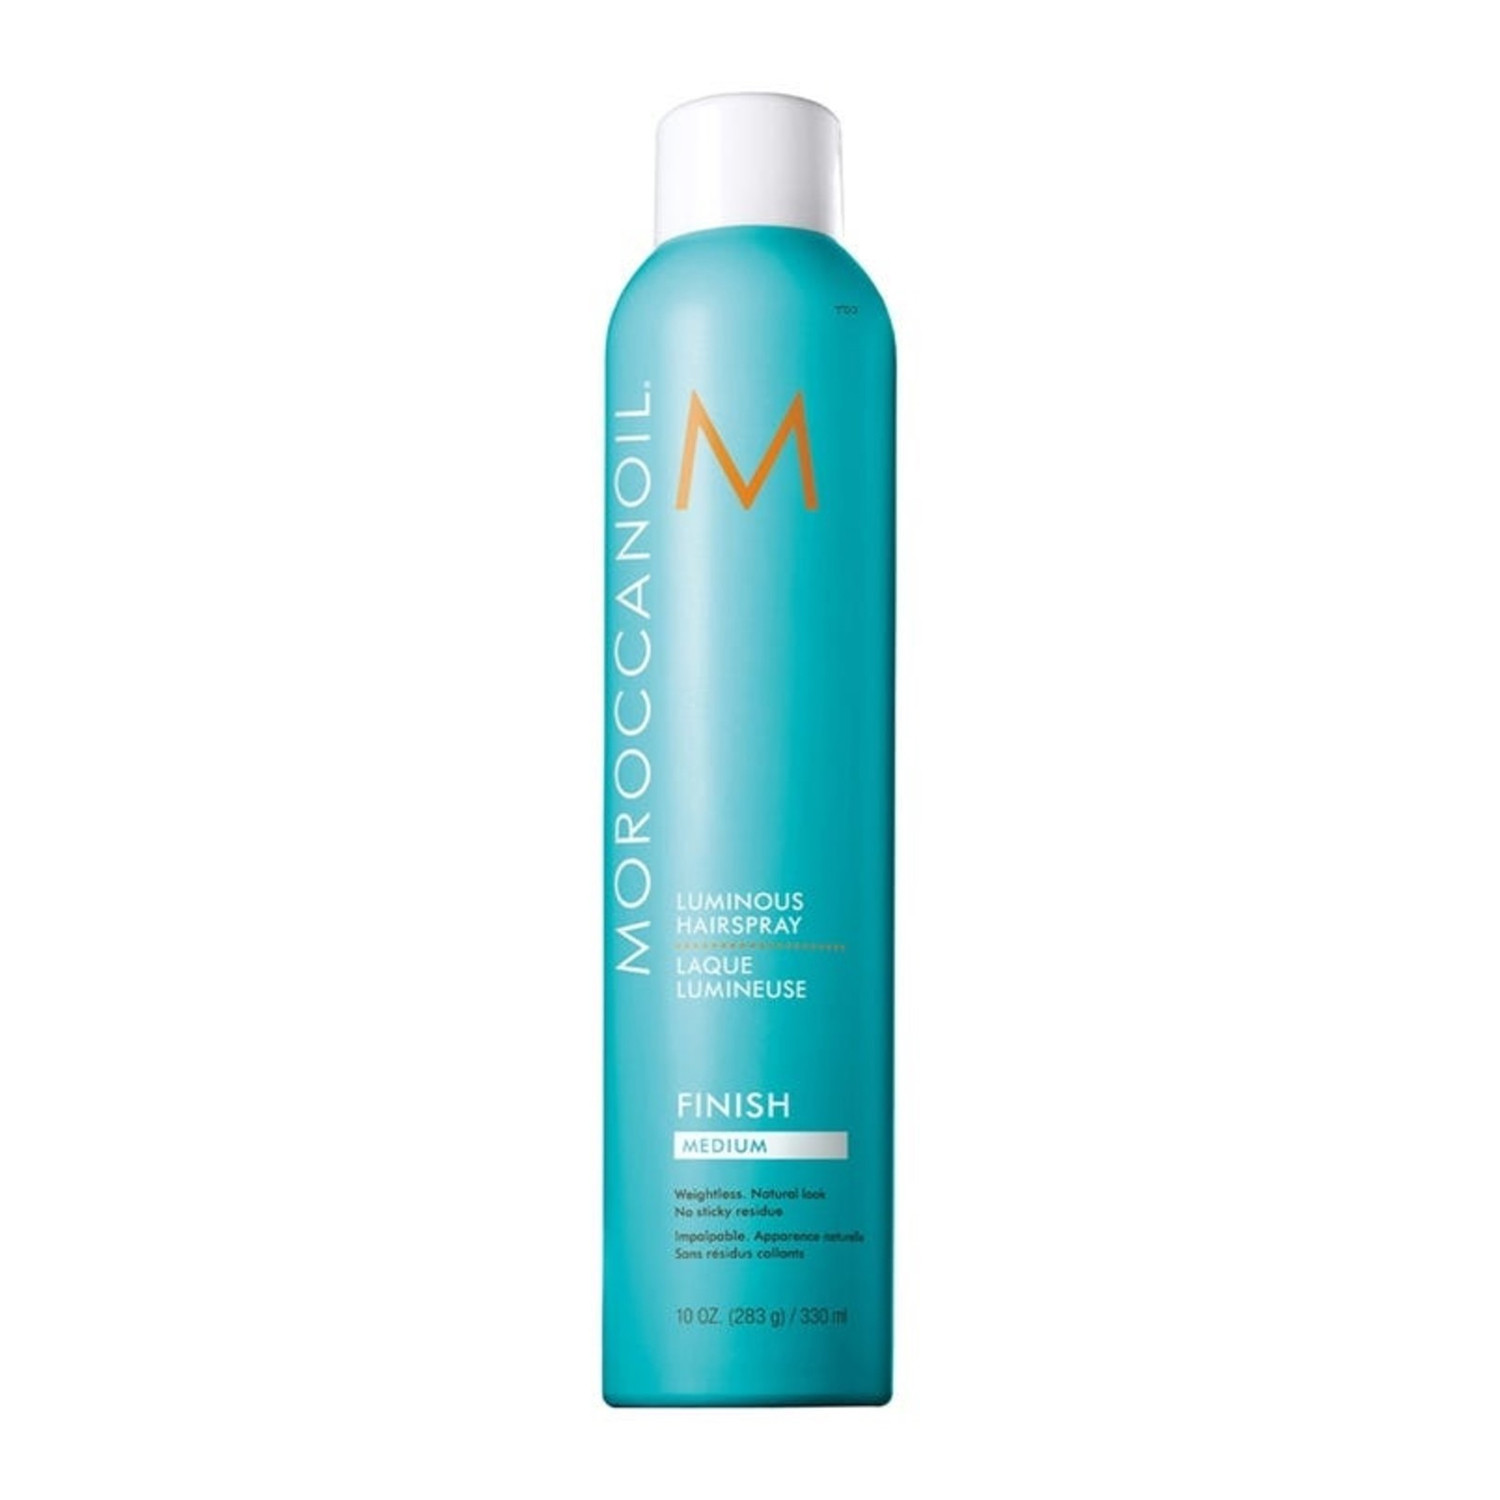 Відгуки про Moroccanoil Luminous Hair Spray Сияющий лак для волос средней фиксации